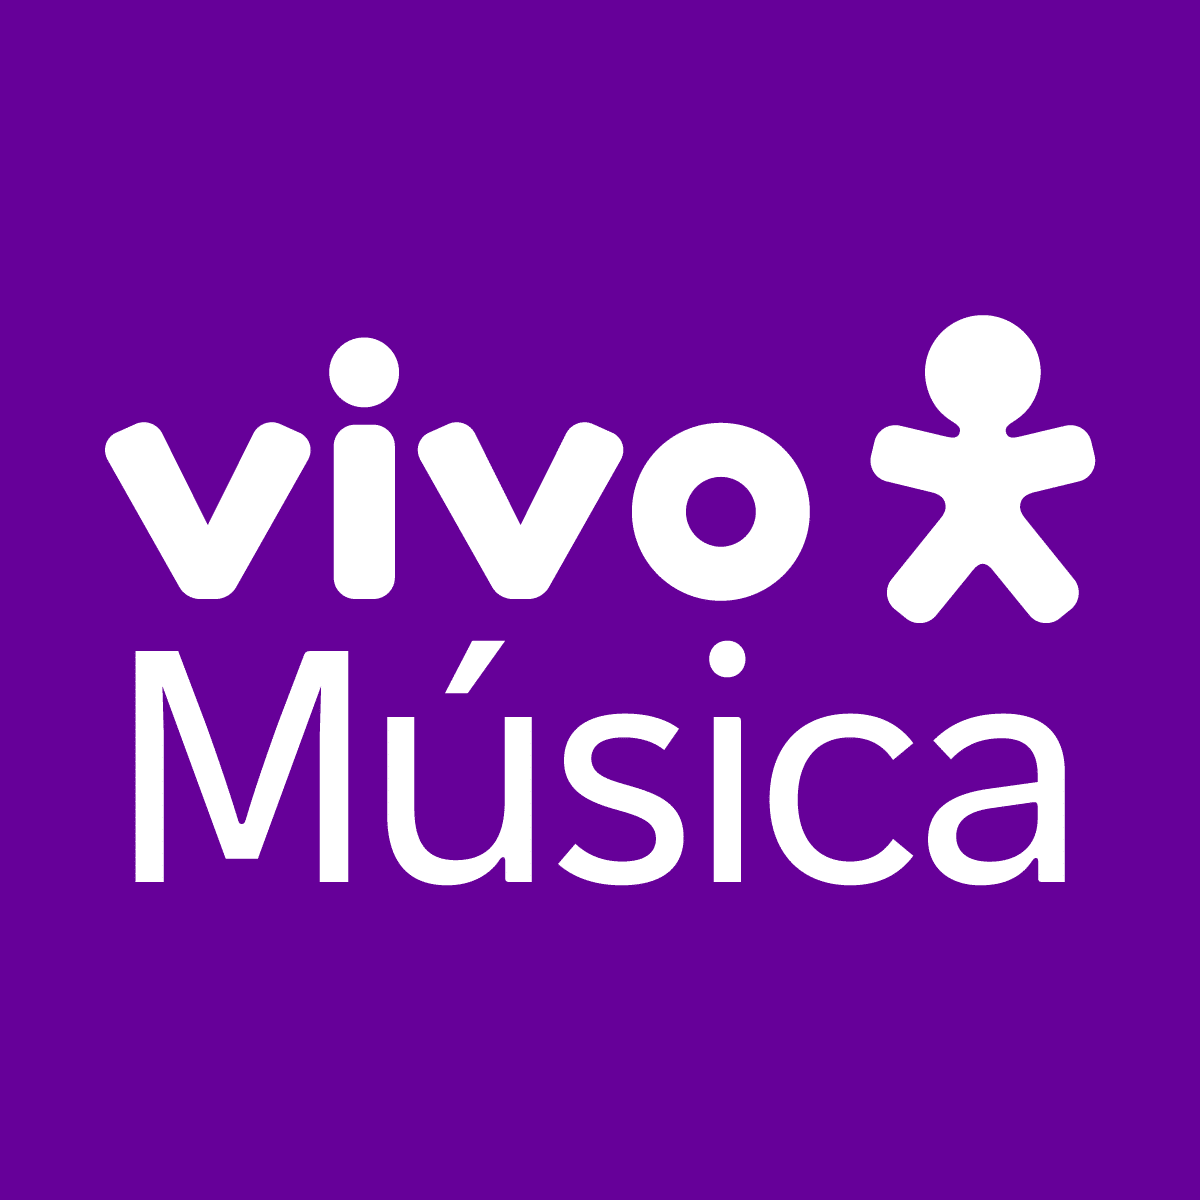 Vivo Música - Cliente Malka Digital